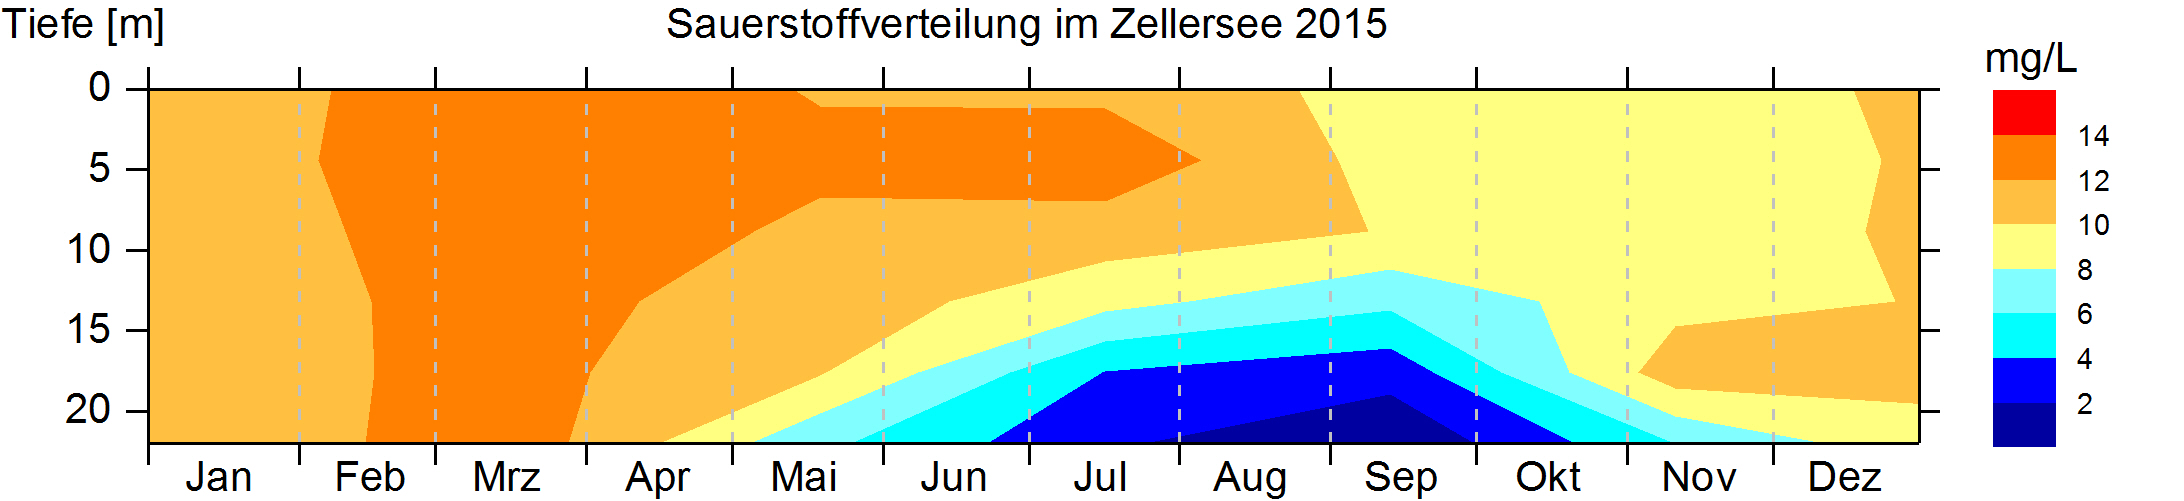 Die Grafik zeigt die unterschiedlichen Sauerstoffgehalte im Zellersee anhand verschiedener Farben. Deutlich sichtbar sind niedrige Sauerstoffwerte in den Monaten Juli bis September am Seeboden durch eine tiefblaue Farbe.